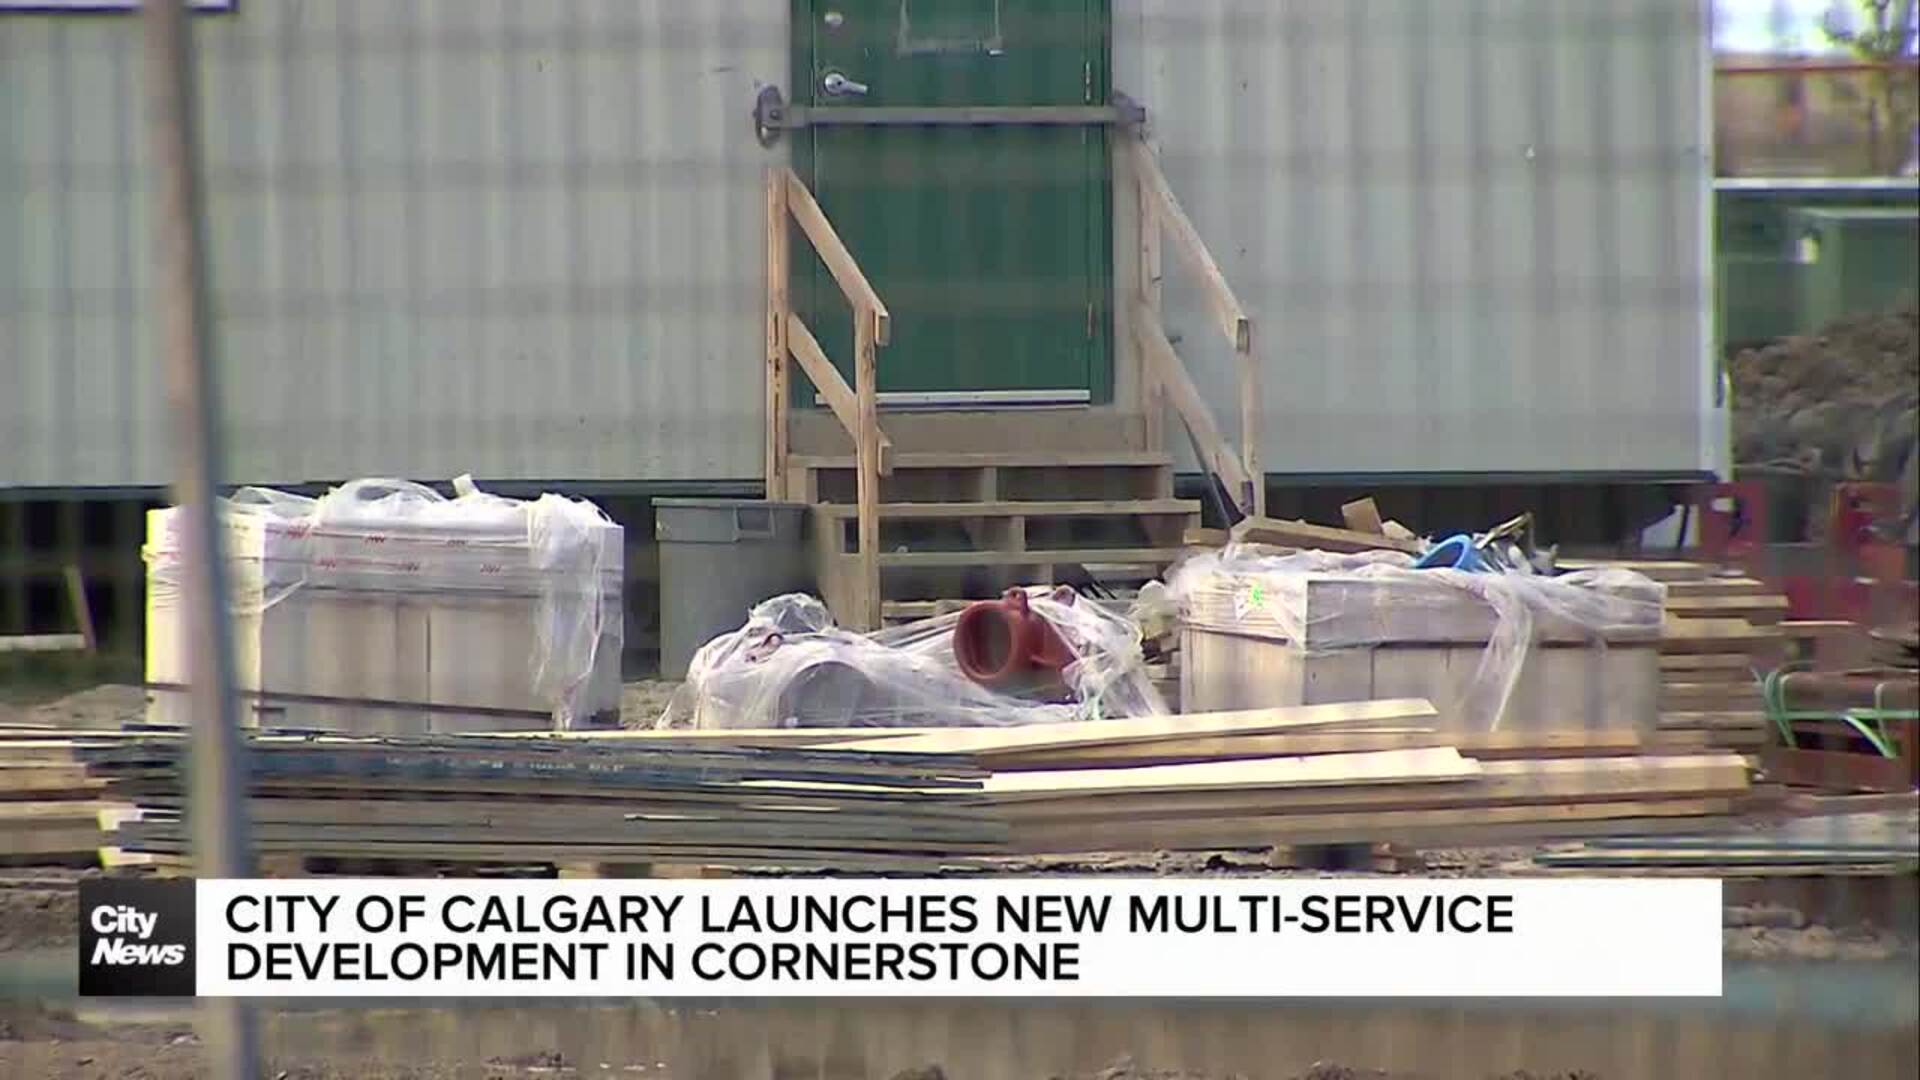 City of Calgary launches new multi-service development in Cornerstone